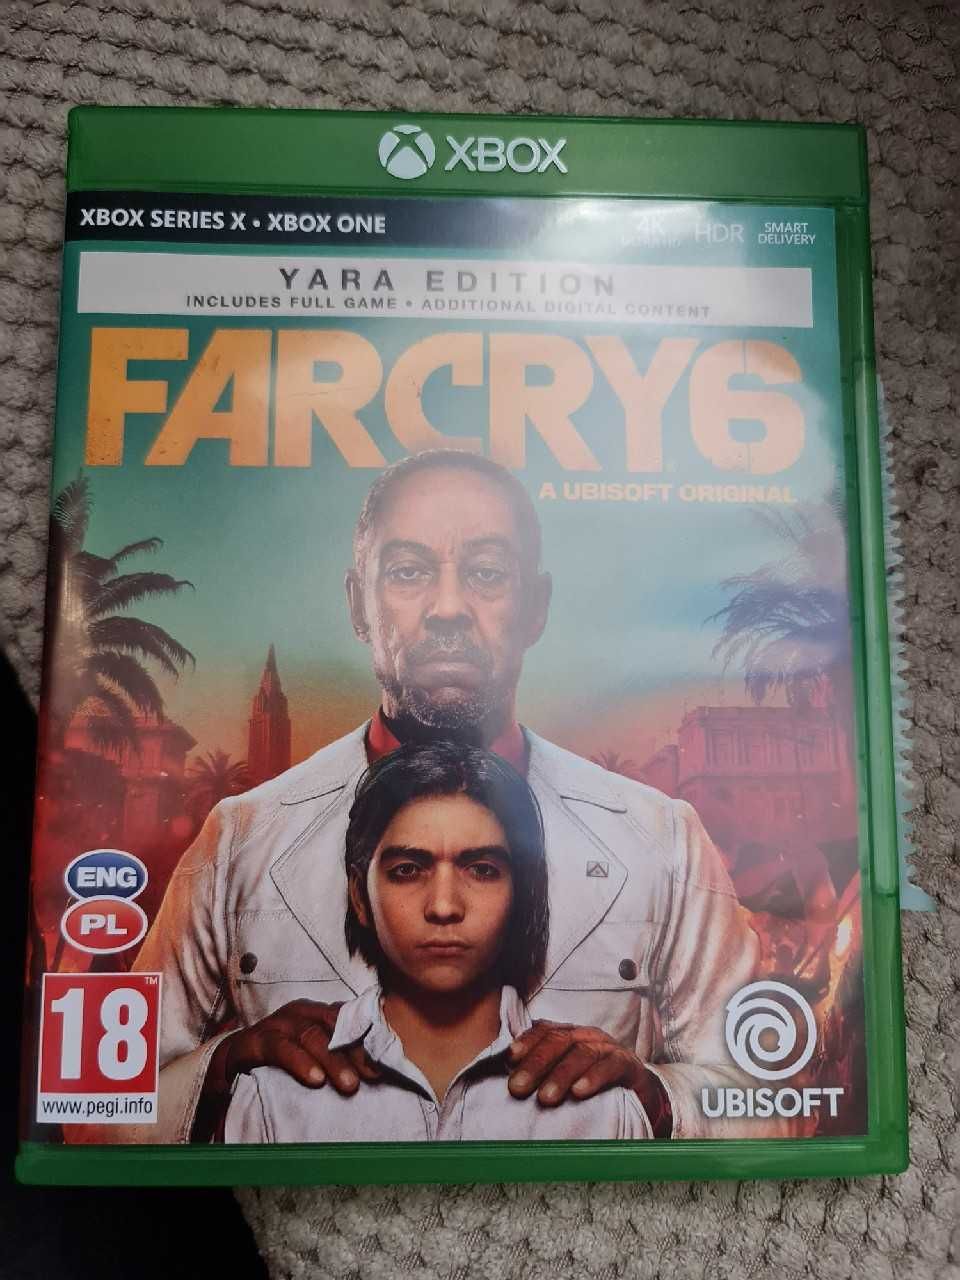 Far cry 6 yara edition xbox one